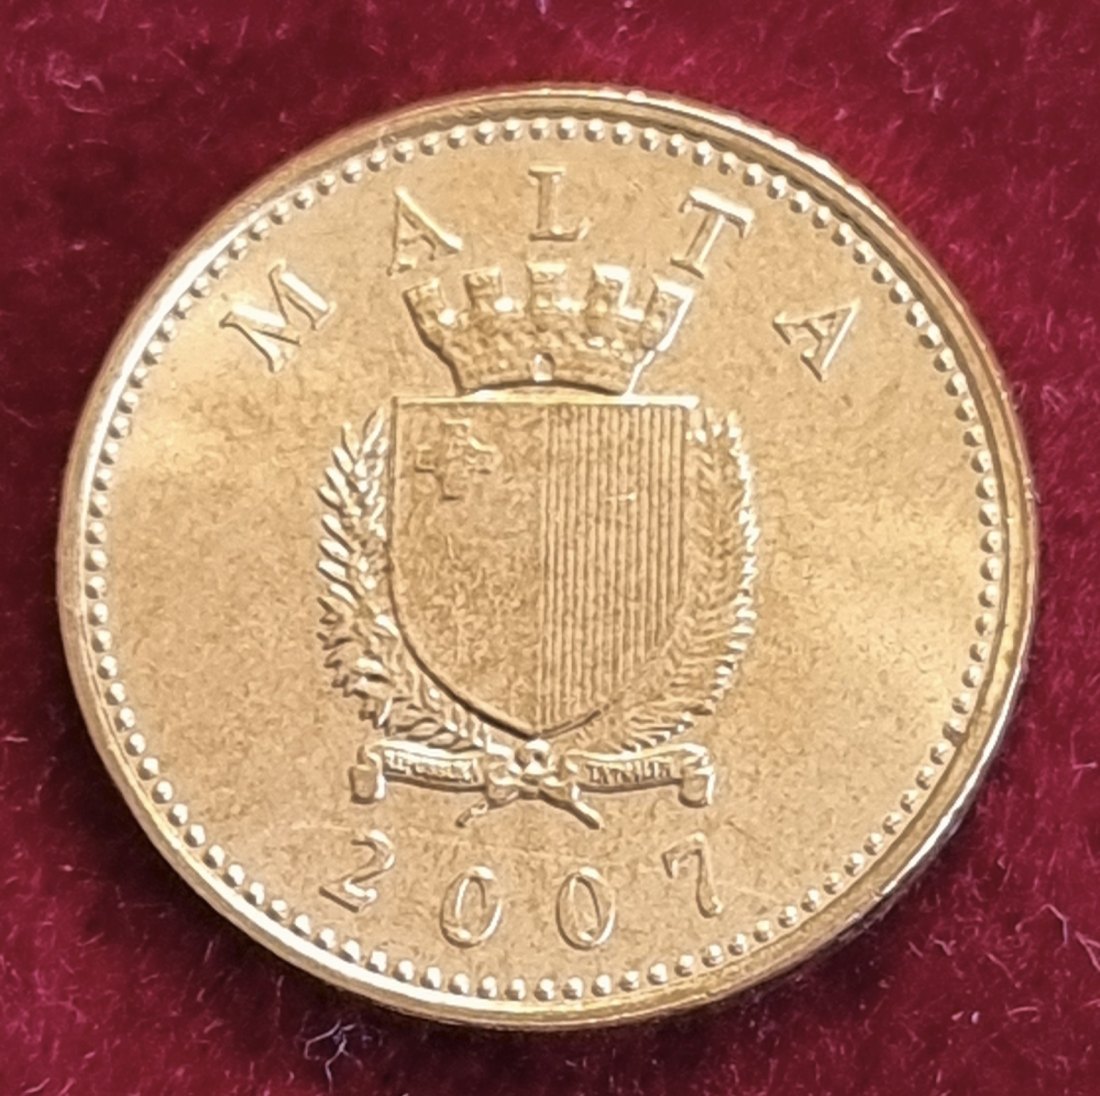  14362(9) 1 Cent (Malta) 2007 in UNC ............................................... von Berlin_coins   